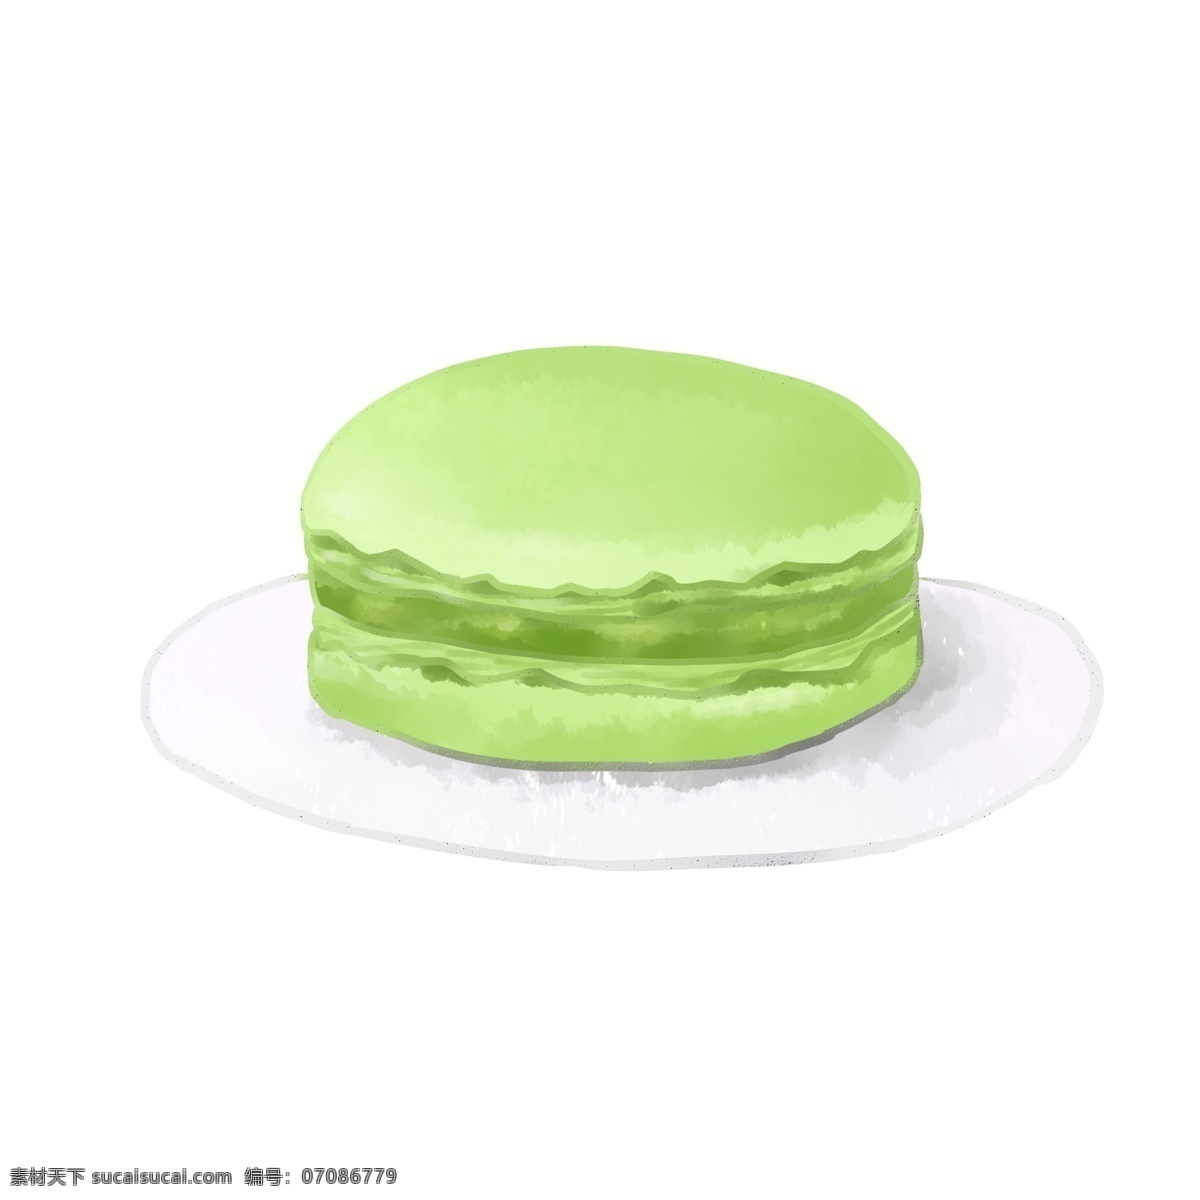 手绘 甜点 美食 抹 茶 马卡 龙 清新 可爱 绿色 商用 抹茶 马克龙 法式甜点 可商用